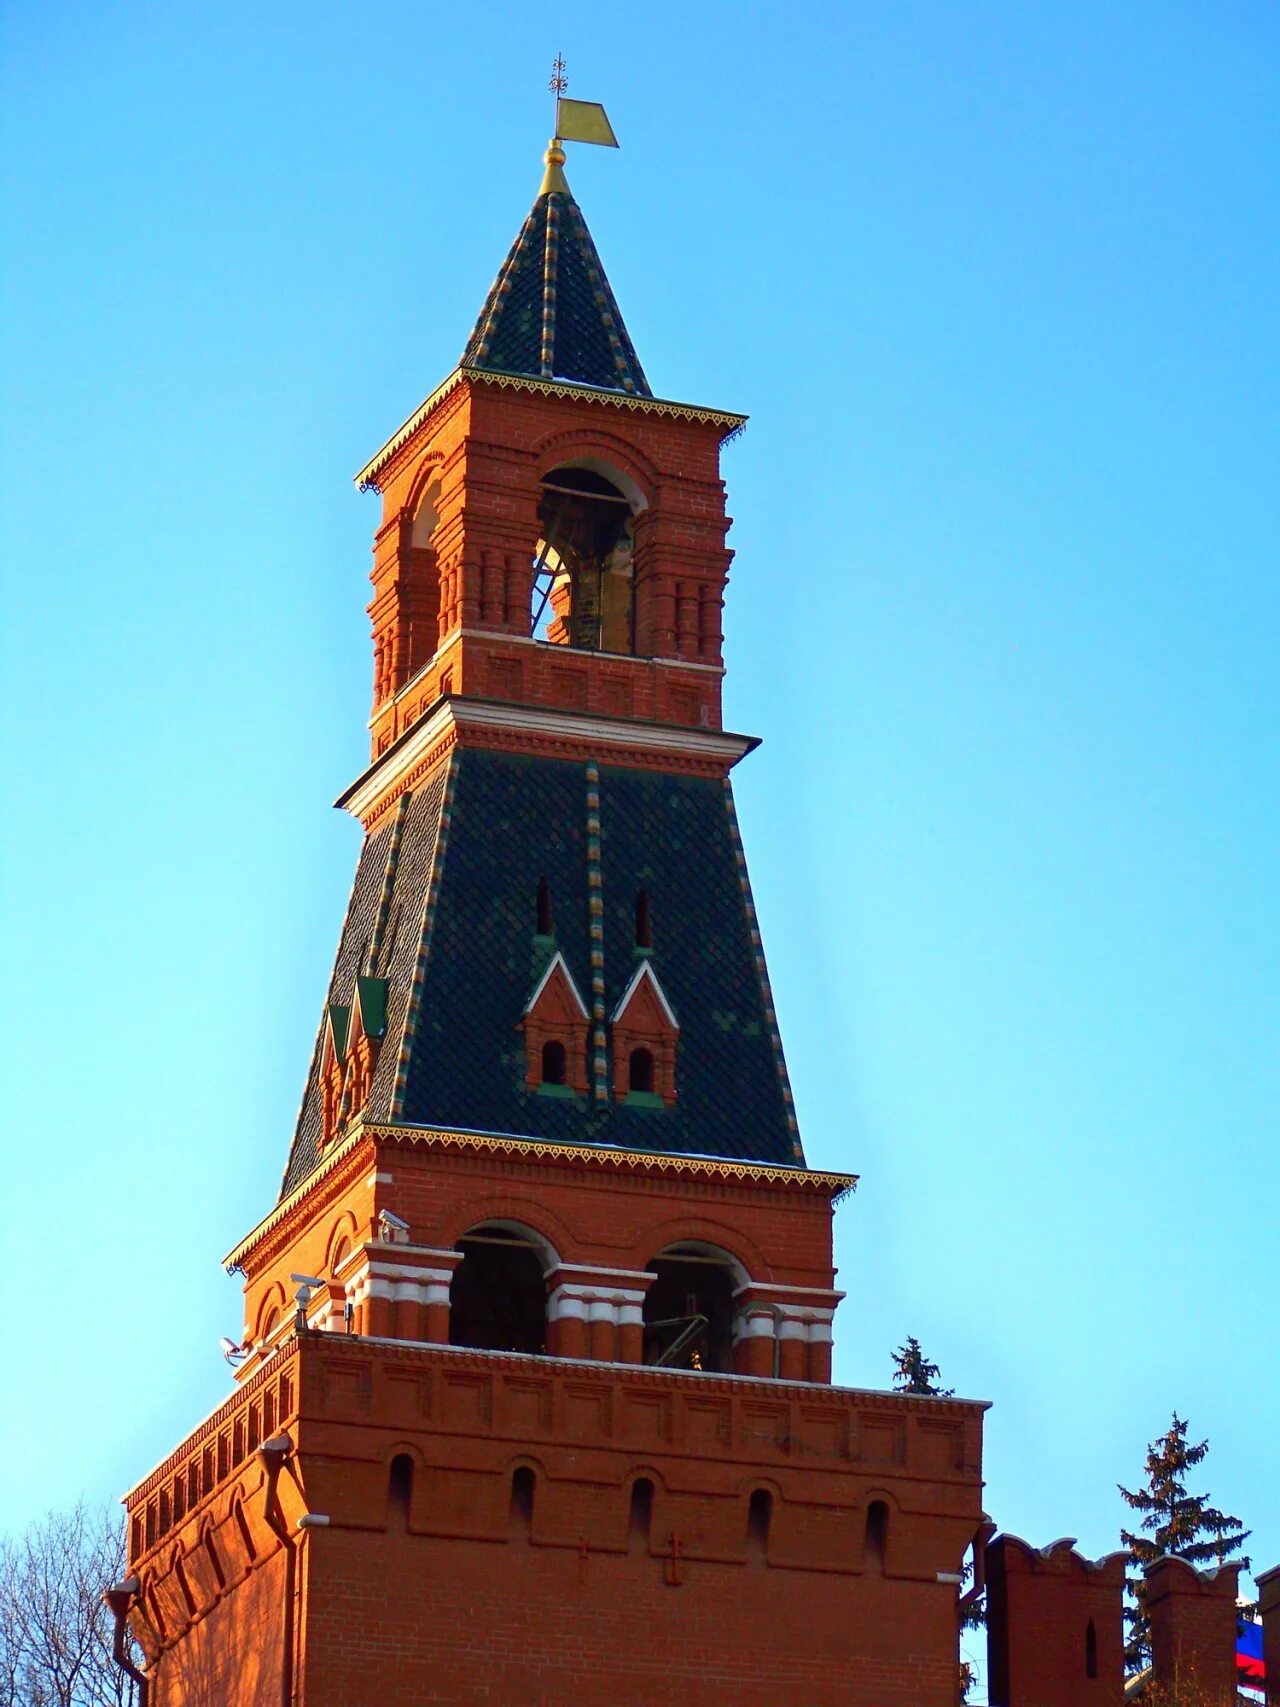 Набатная башня. Набатная башня Московского. Башни Кремля Набатная башня. Константино-Еленинская башня Московского Кремля.